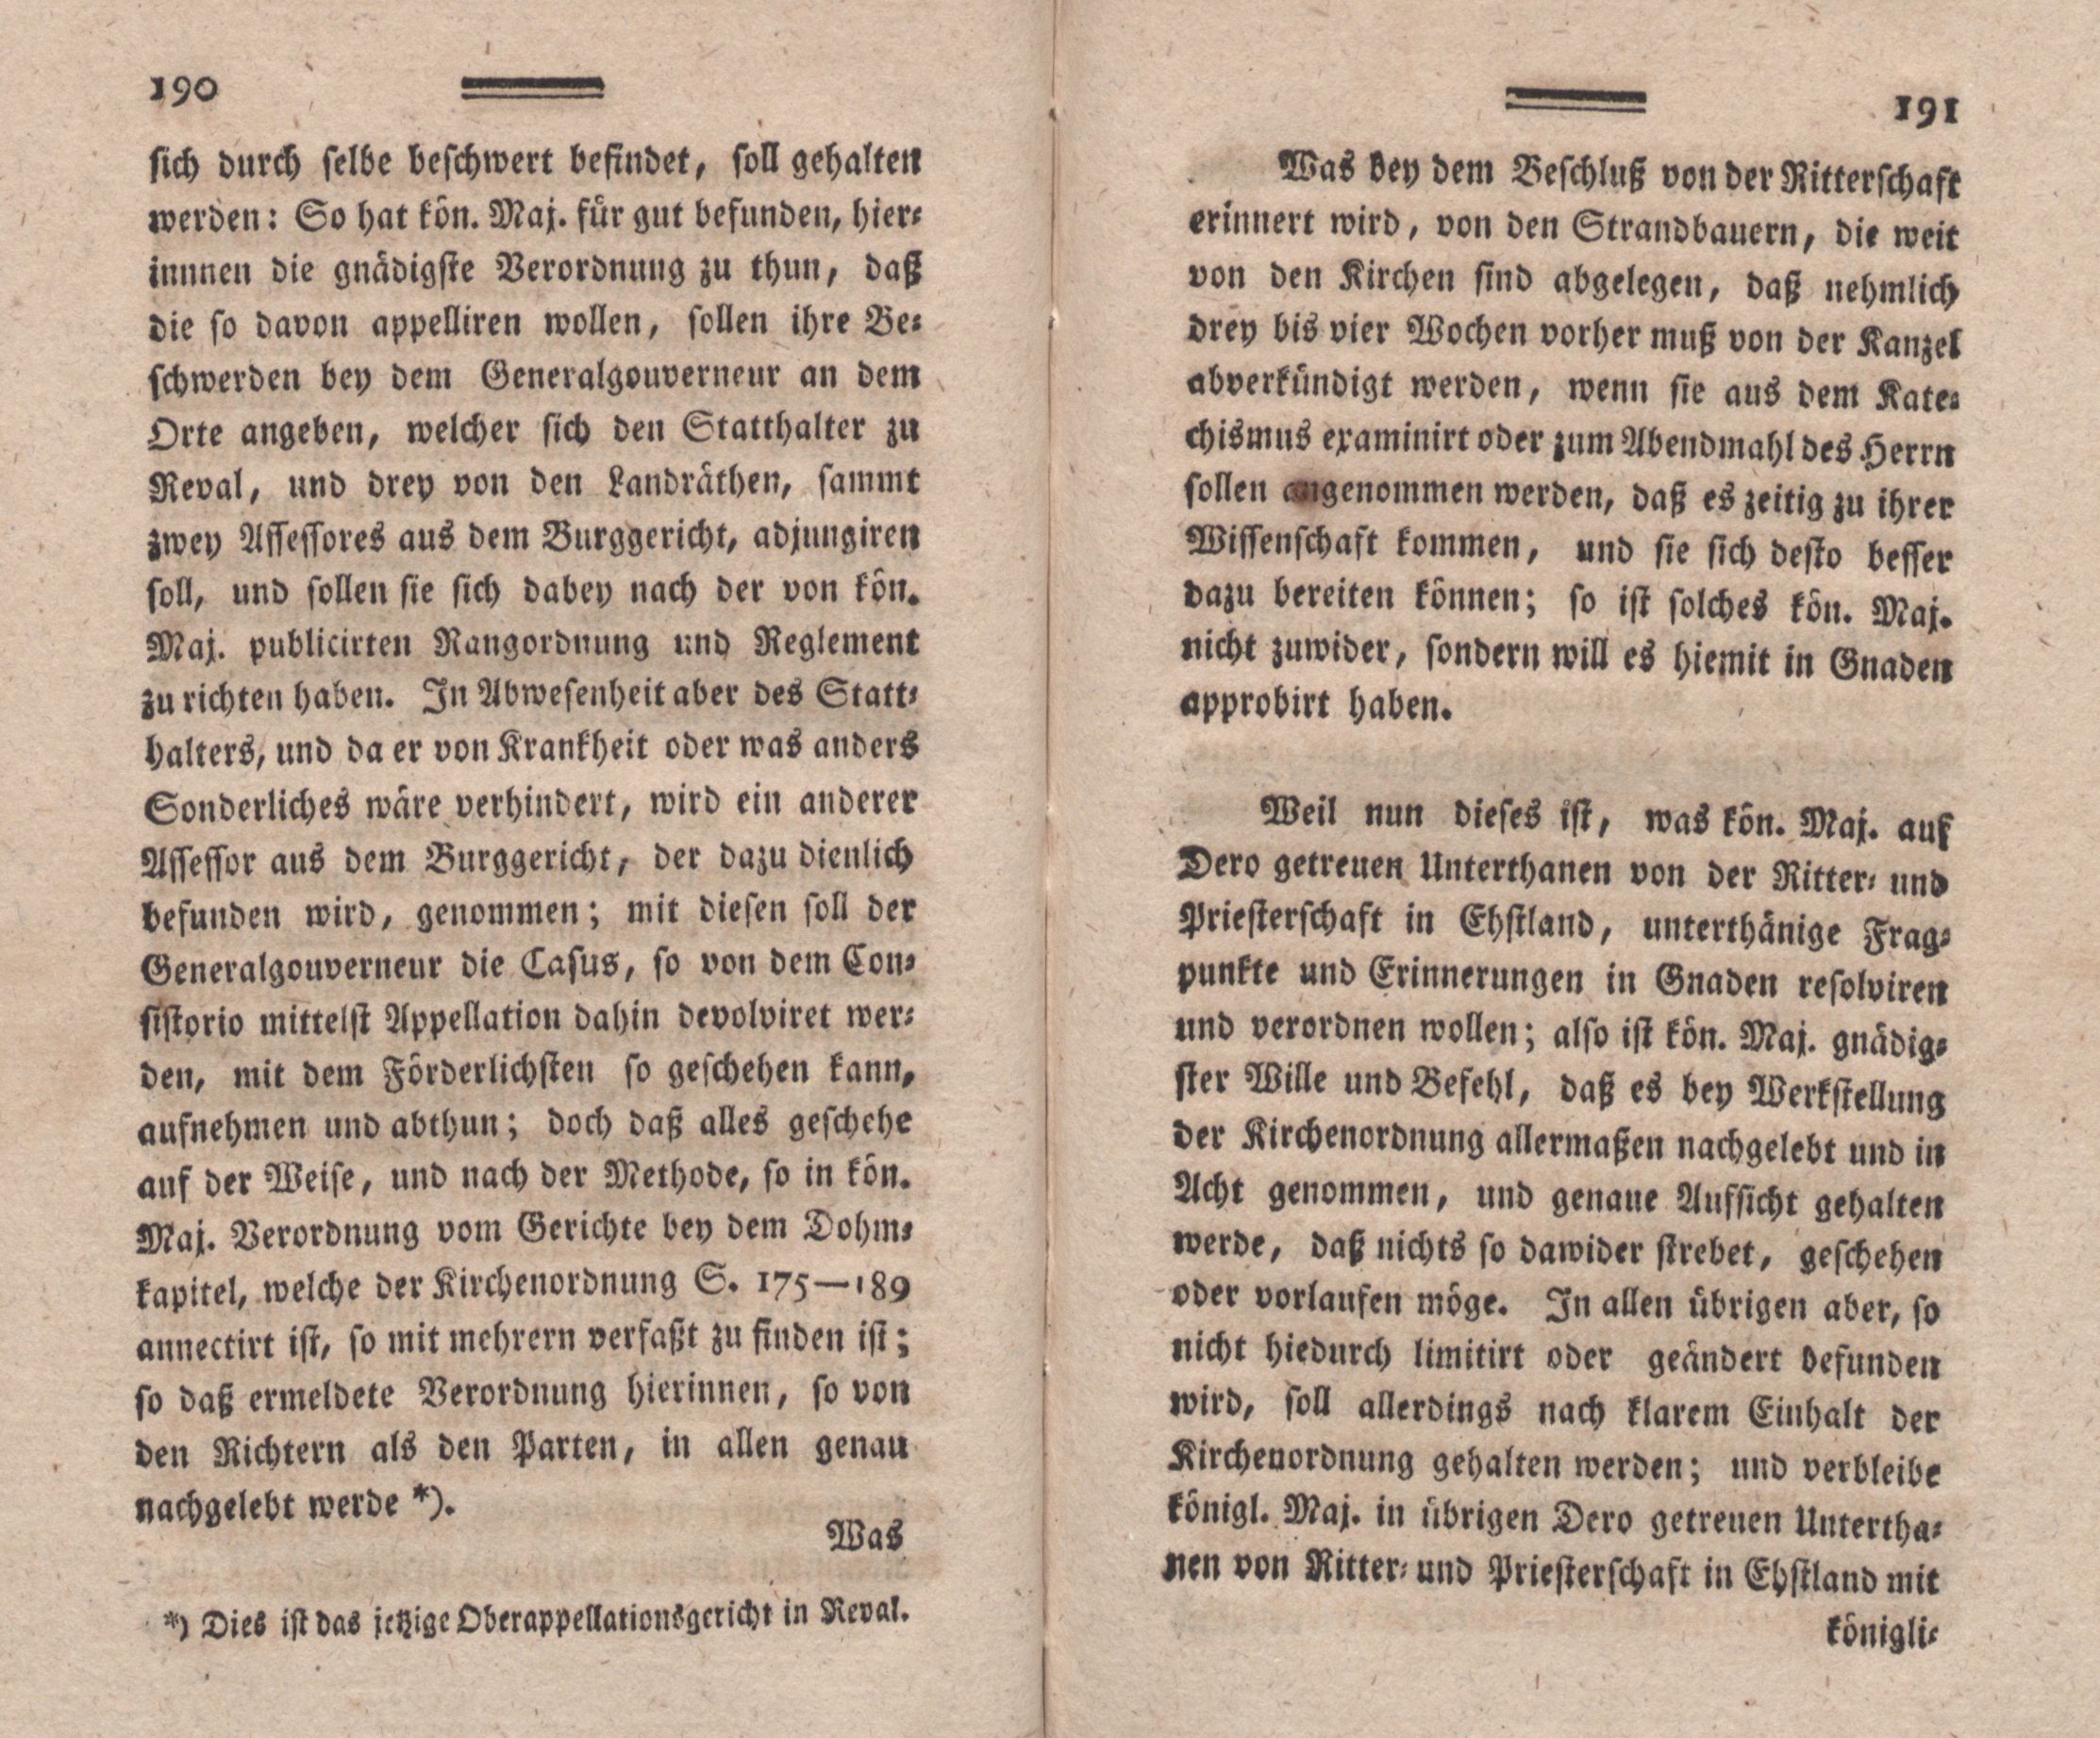 Nordische Miscellaneen [02] (1781) | 96. (190-191) Main body of text